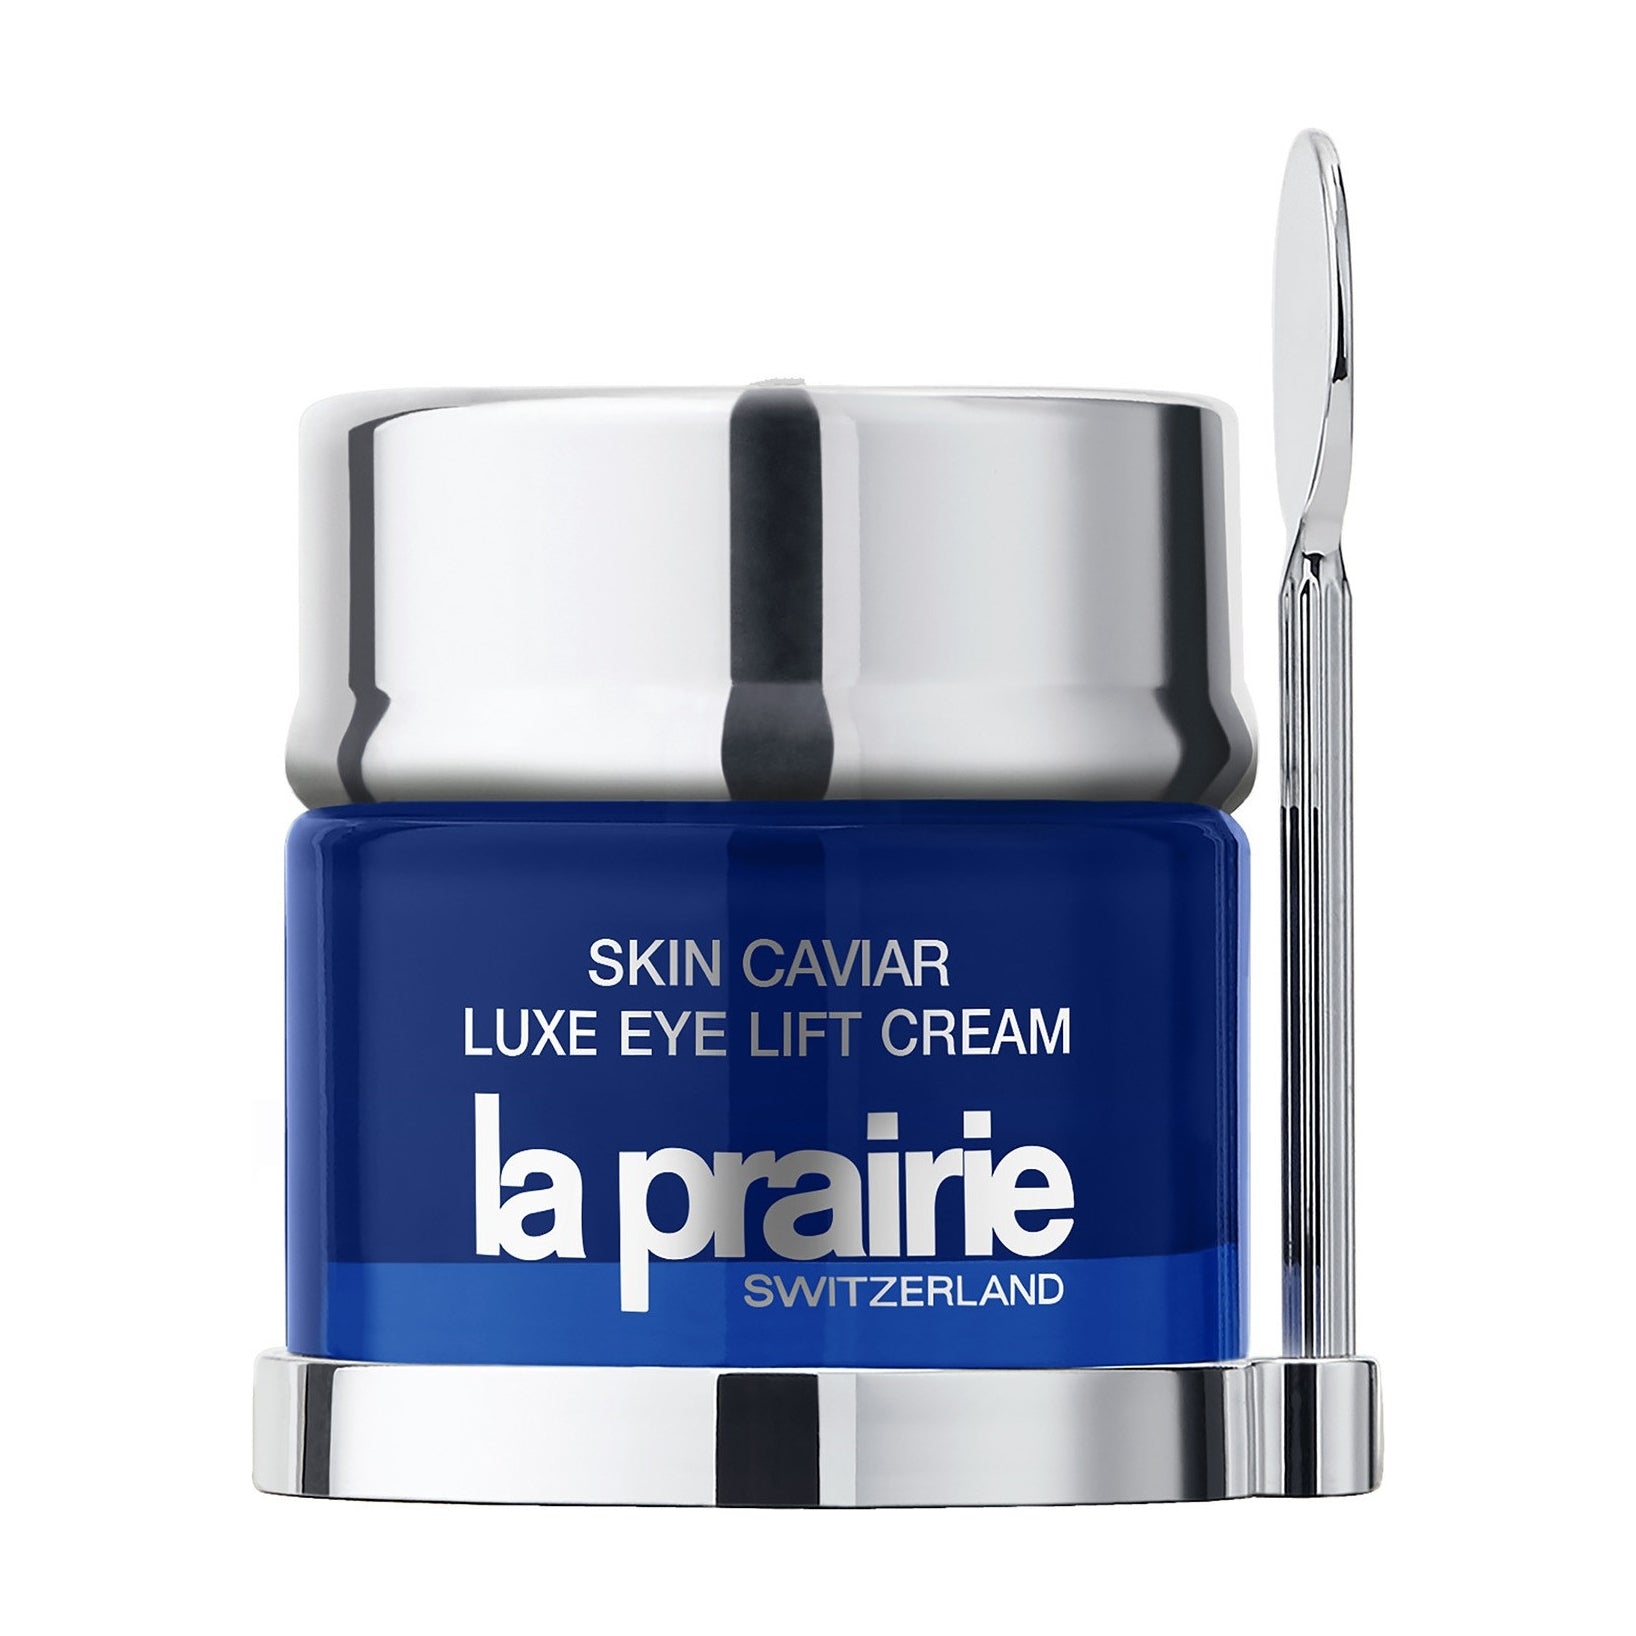 SKIN CAVIAR luxe eye cream premier Gesichtspflege LA PRAIRIE   